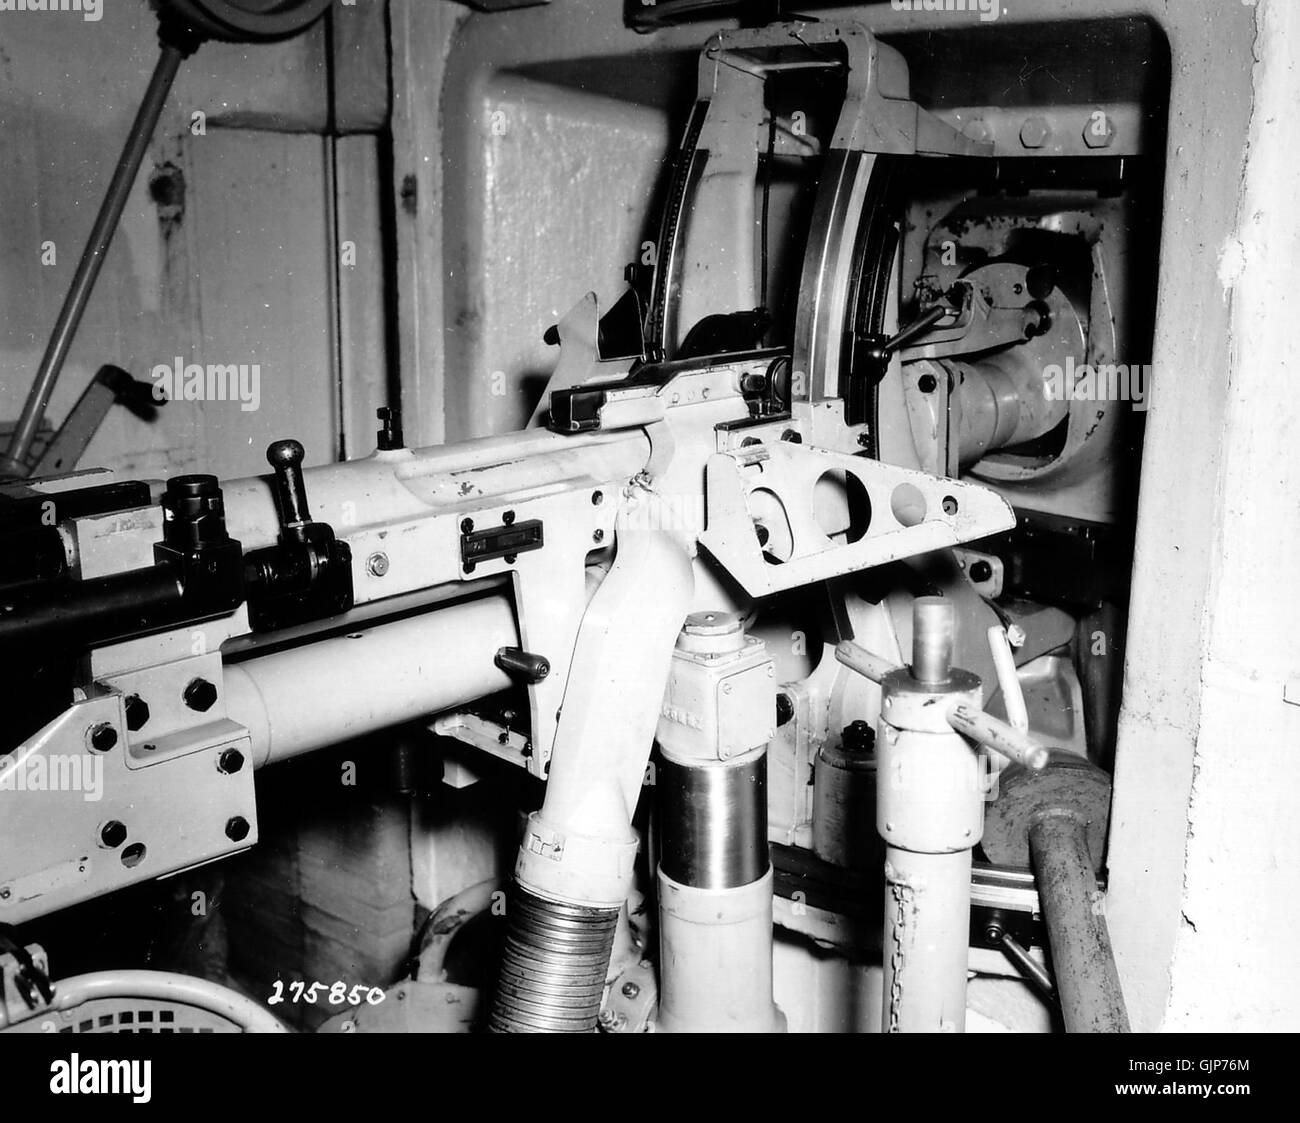 4cm kanón vz. Mur de l'Atlantique 36 P001180 Banque D'Images